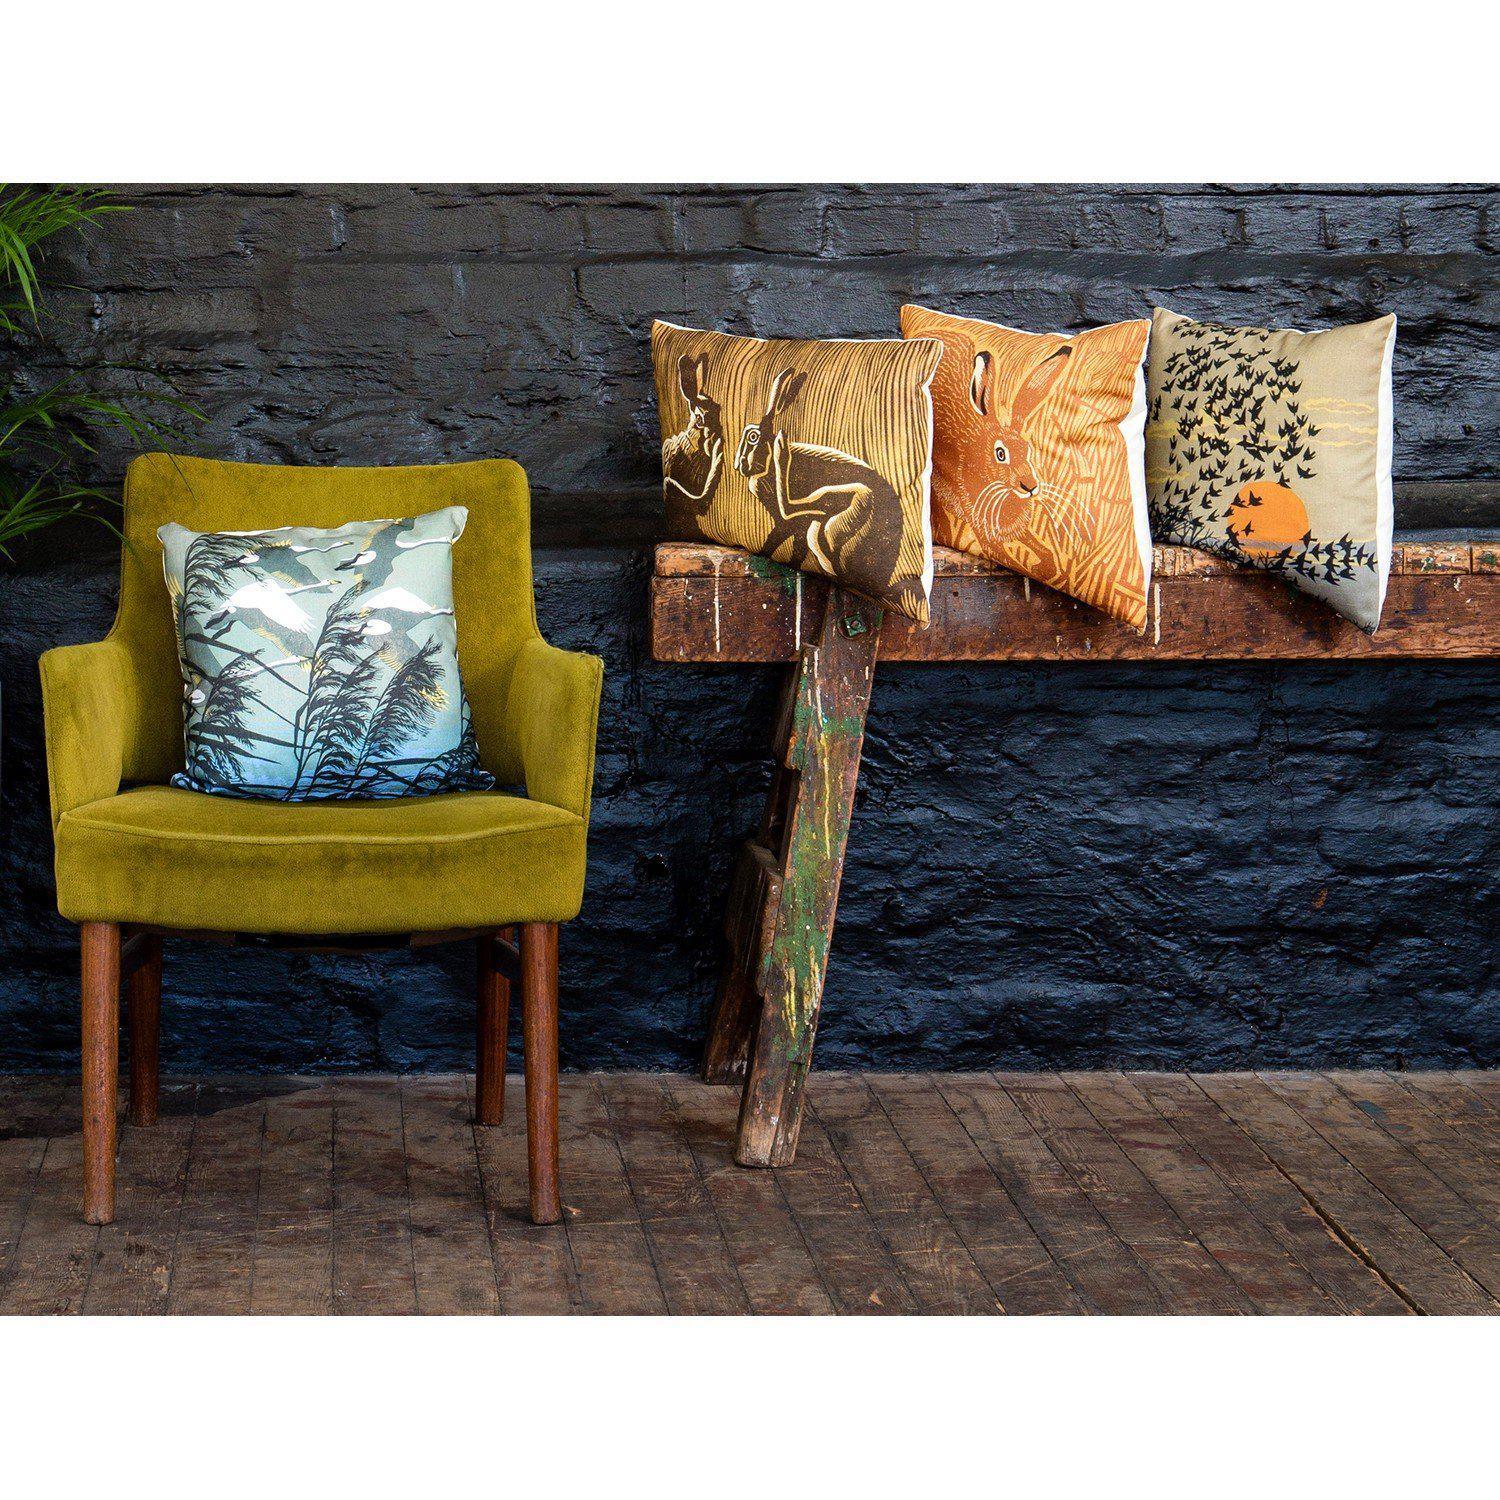 Poppy Hare - Robert Gillmor Cushion - Handmade Cushions UK - WeLoveCushions